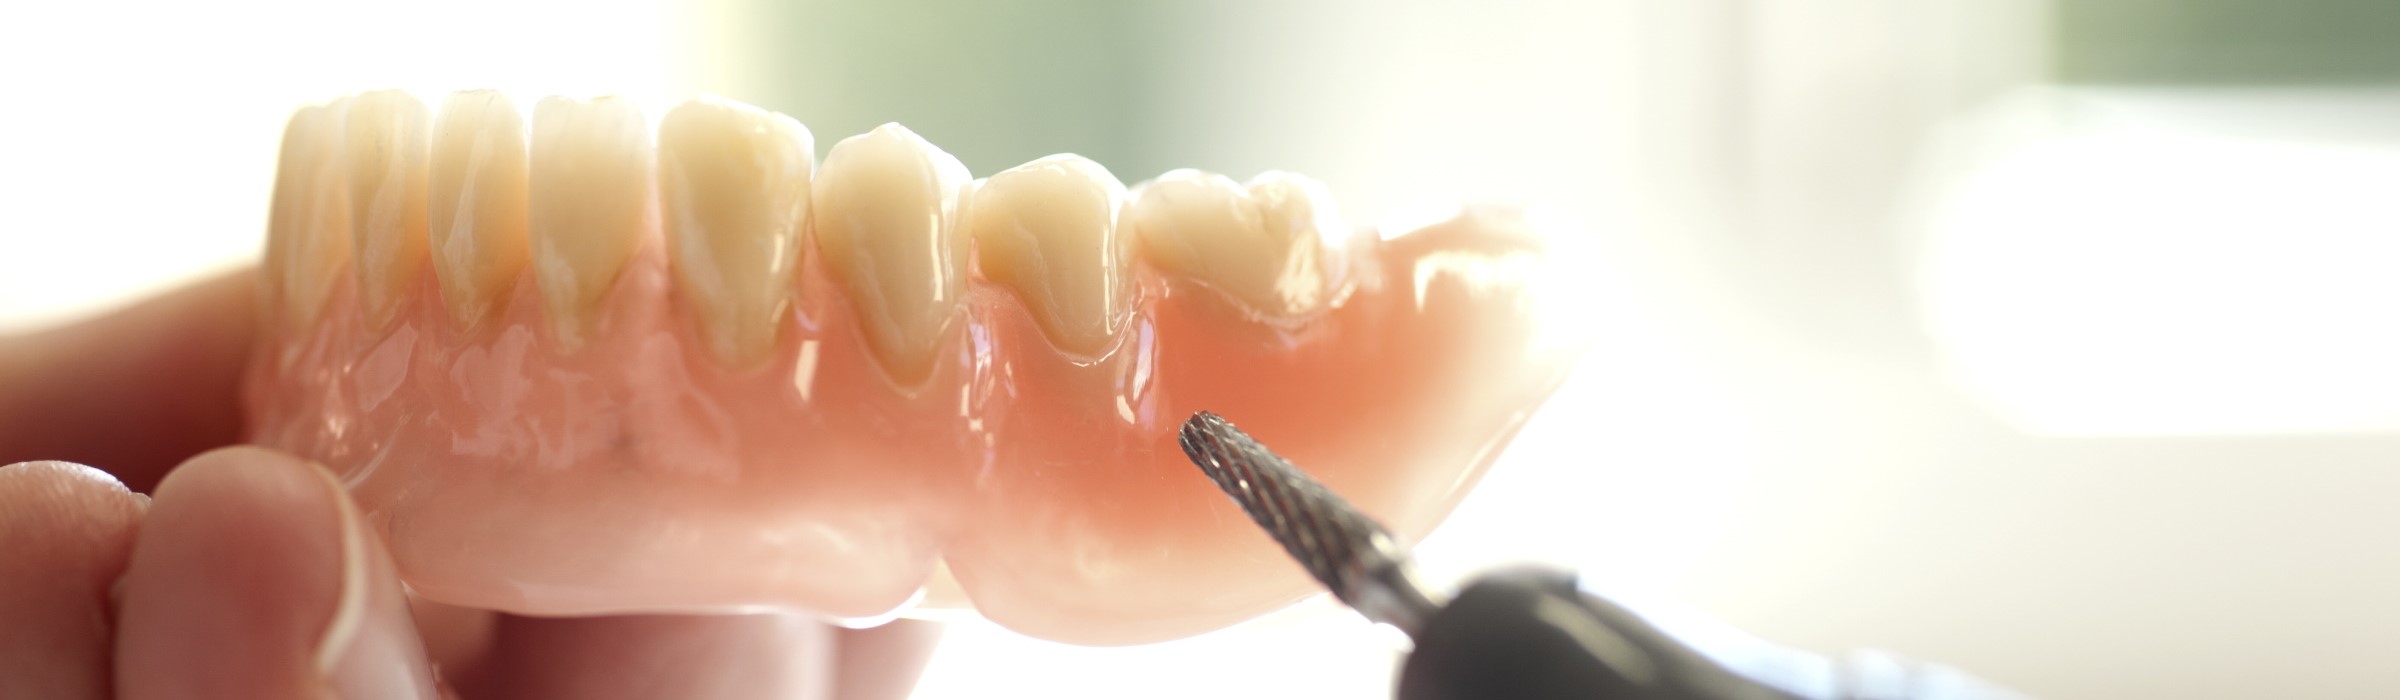 Dentallabor – wichtiger Partner für den Zahnarzt